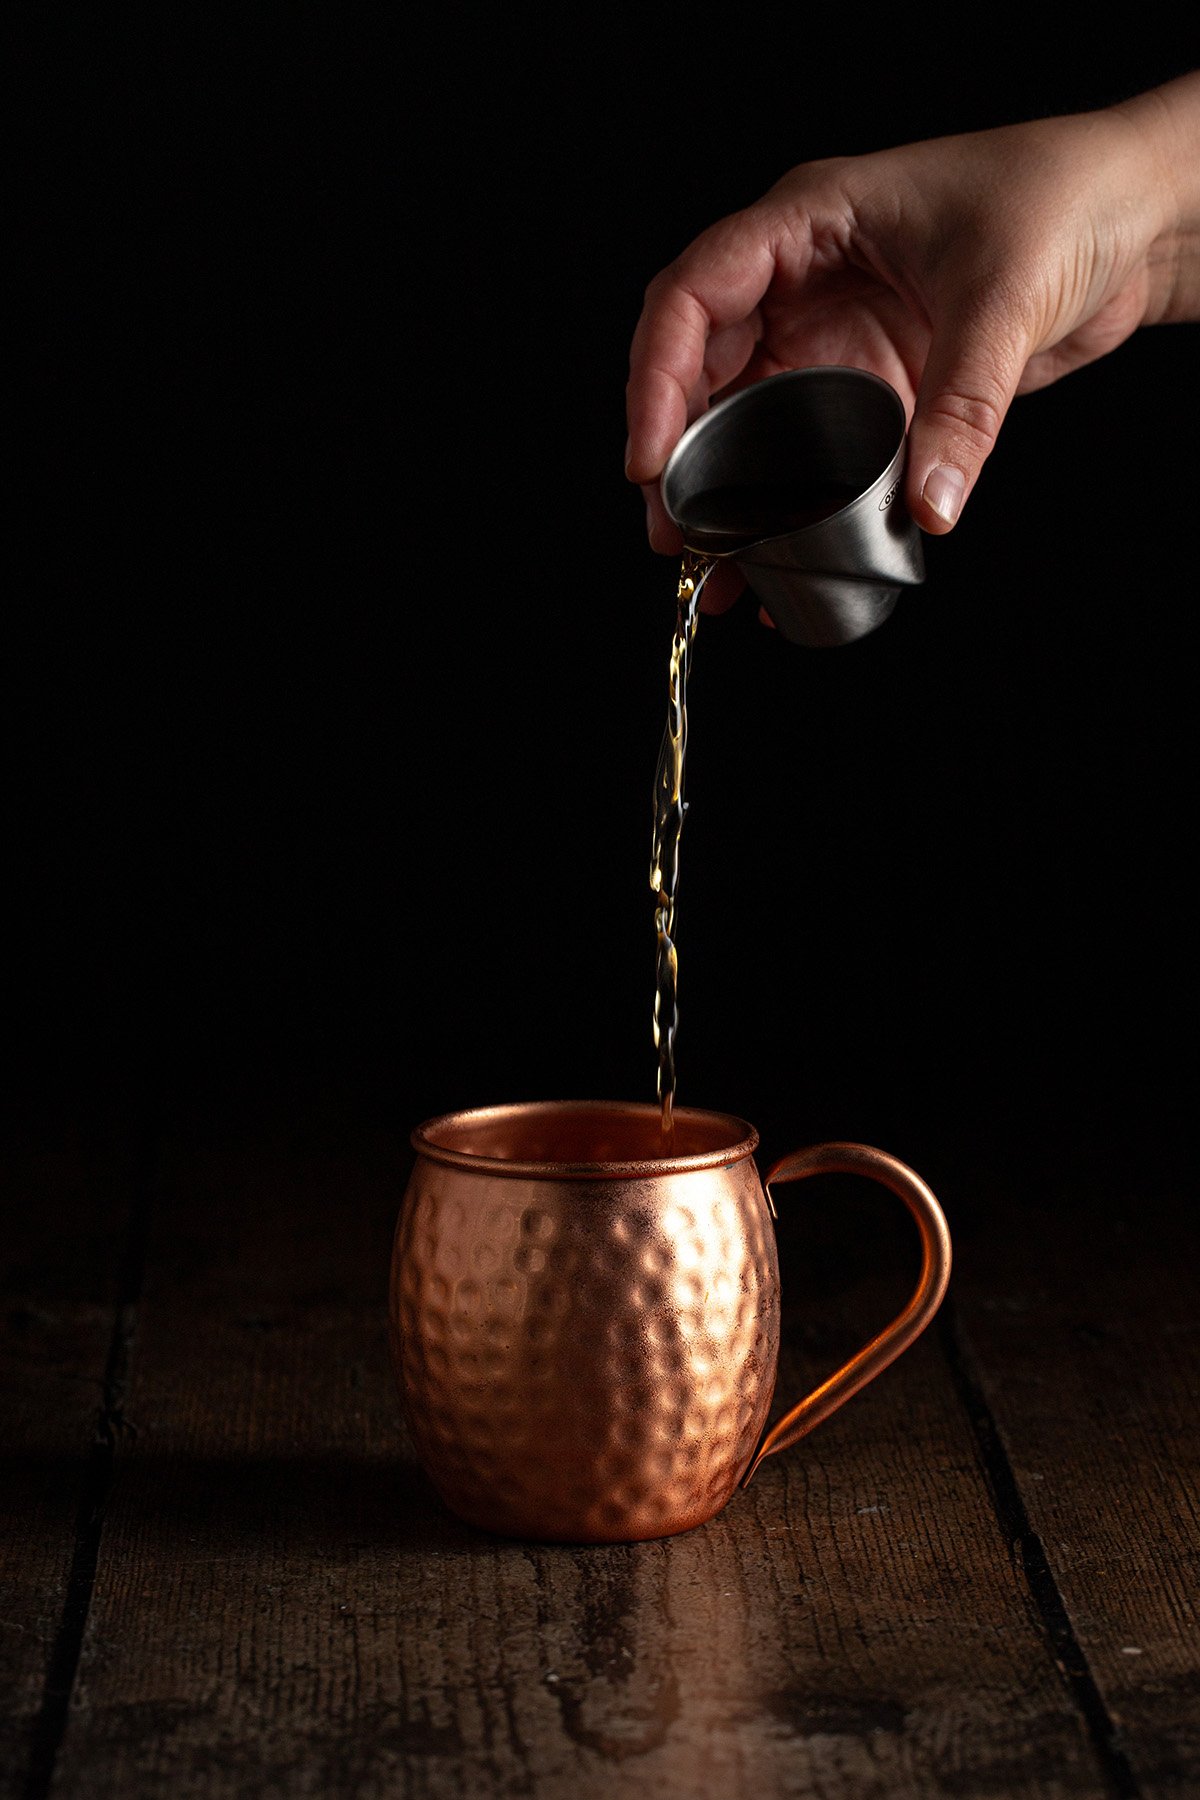 bourbon being poured into a copper mug.